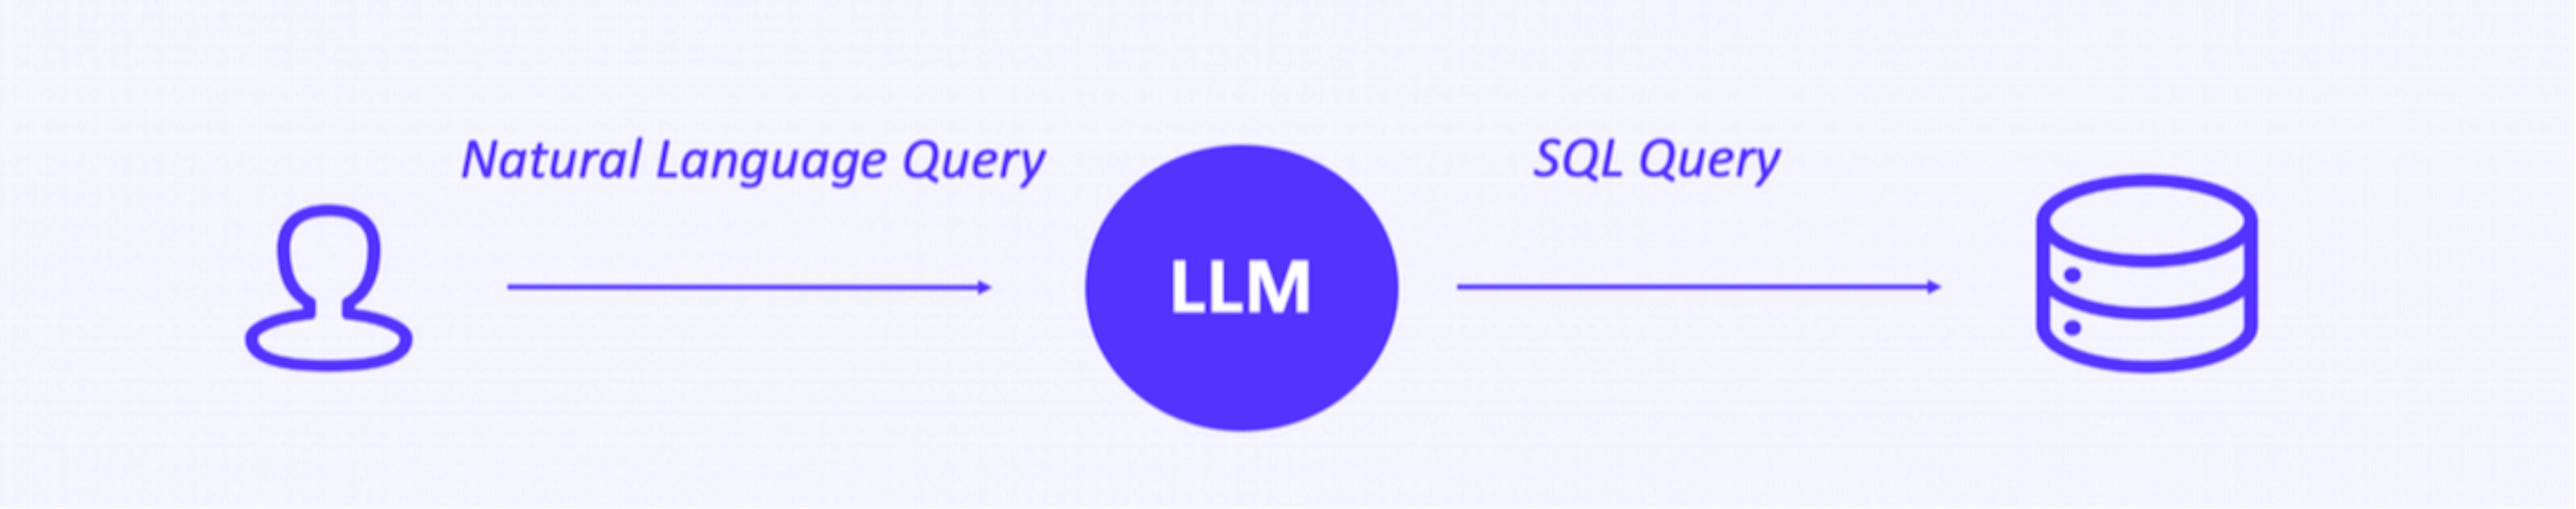 Using LLM as an intermediate